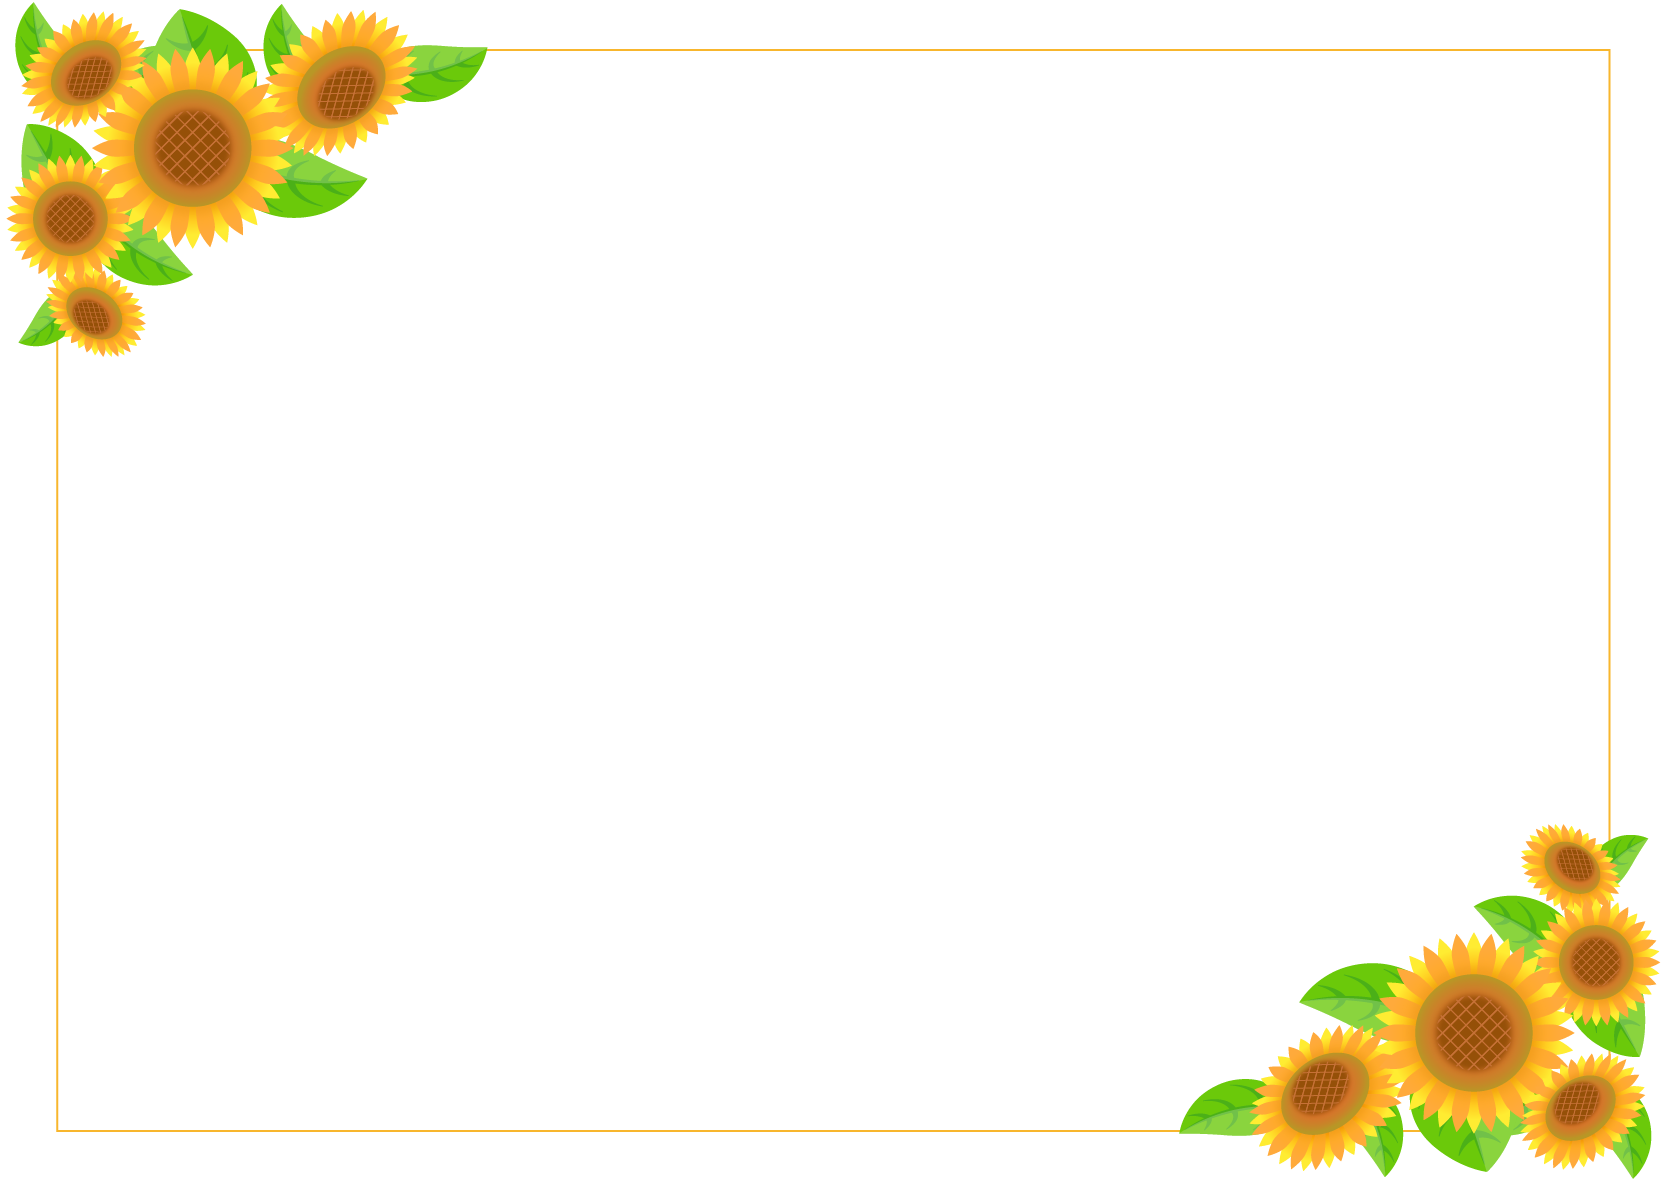 商用フリー 無料イラスト ひまわり 向日葵 のフレームイラスト Sunflowerillustration007 商用ok フリー素材集 ナイスな イラスト